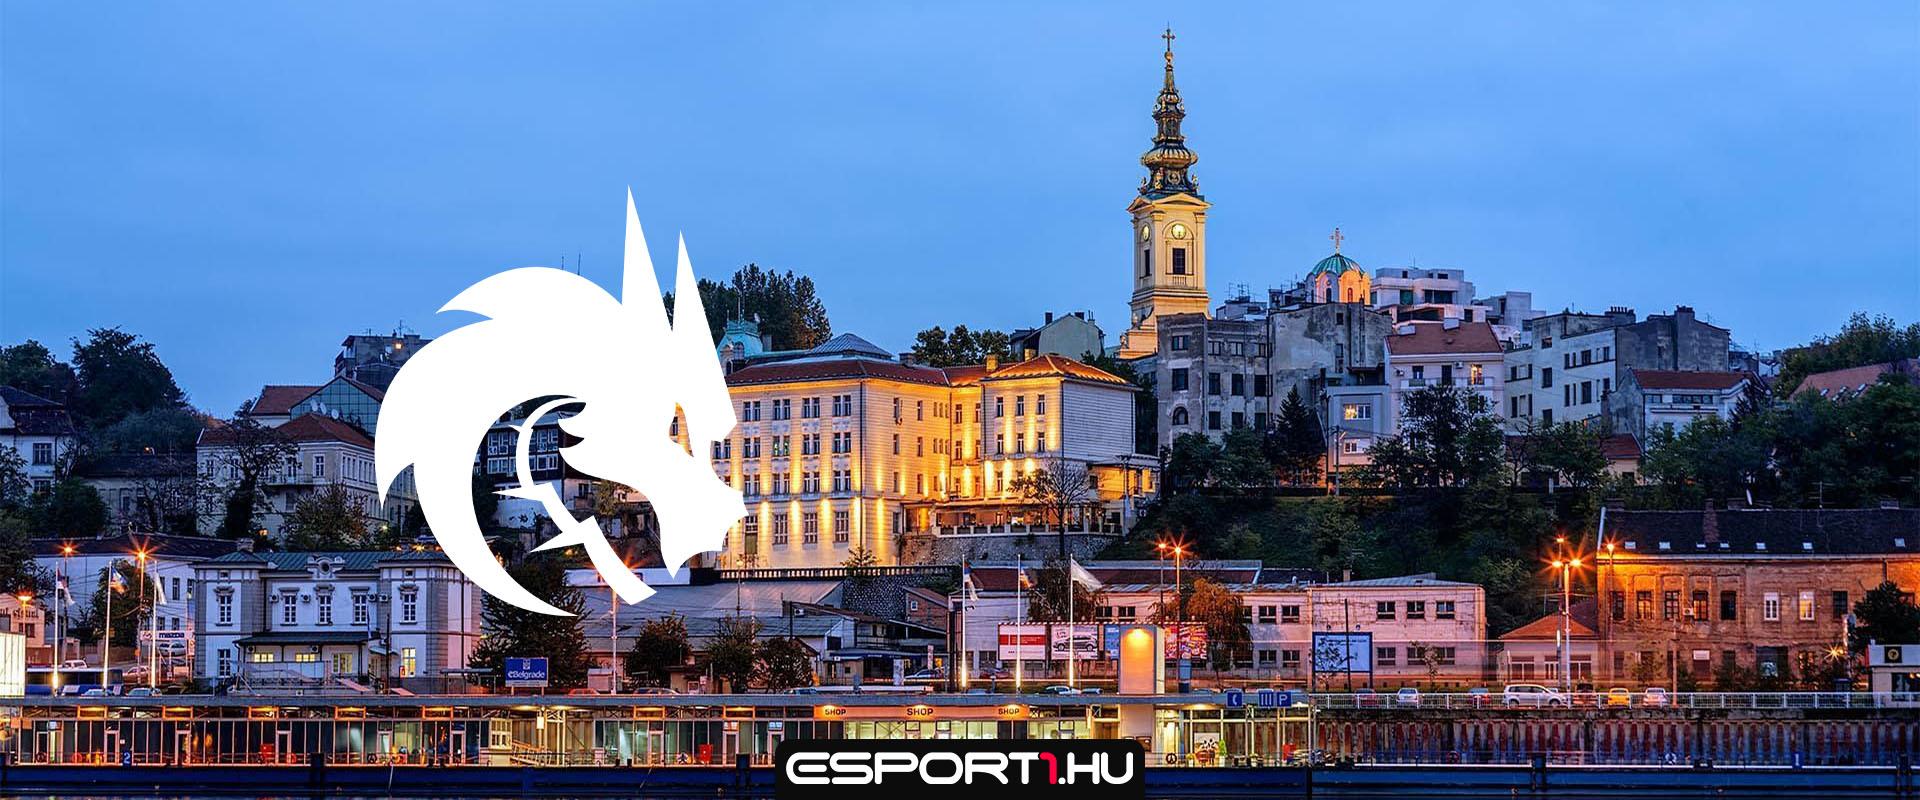 A szankciók miatt Belgrádba költözik a Team Spirit